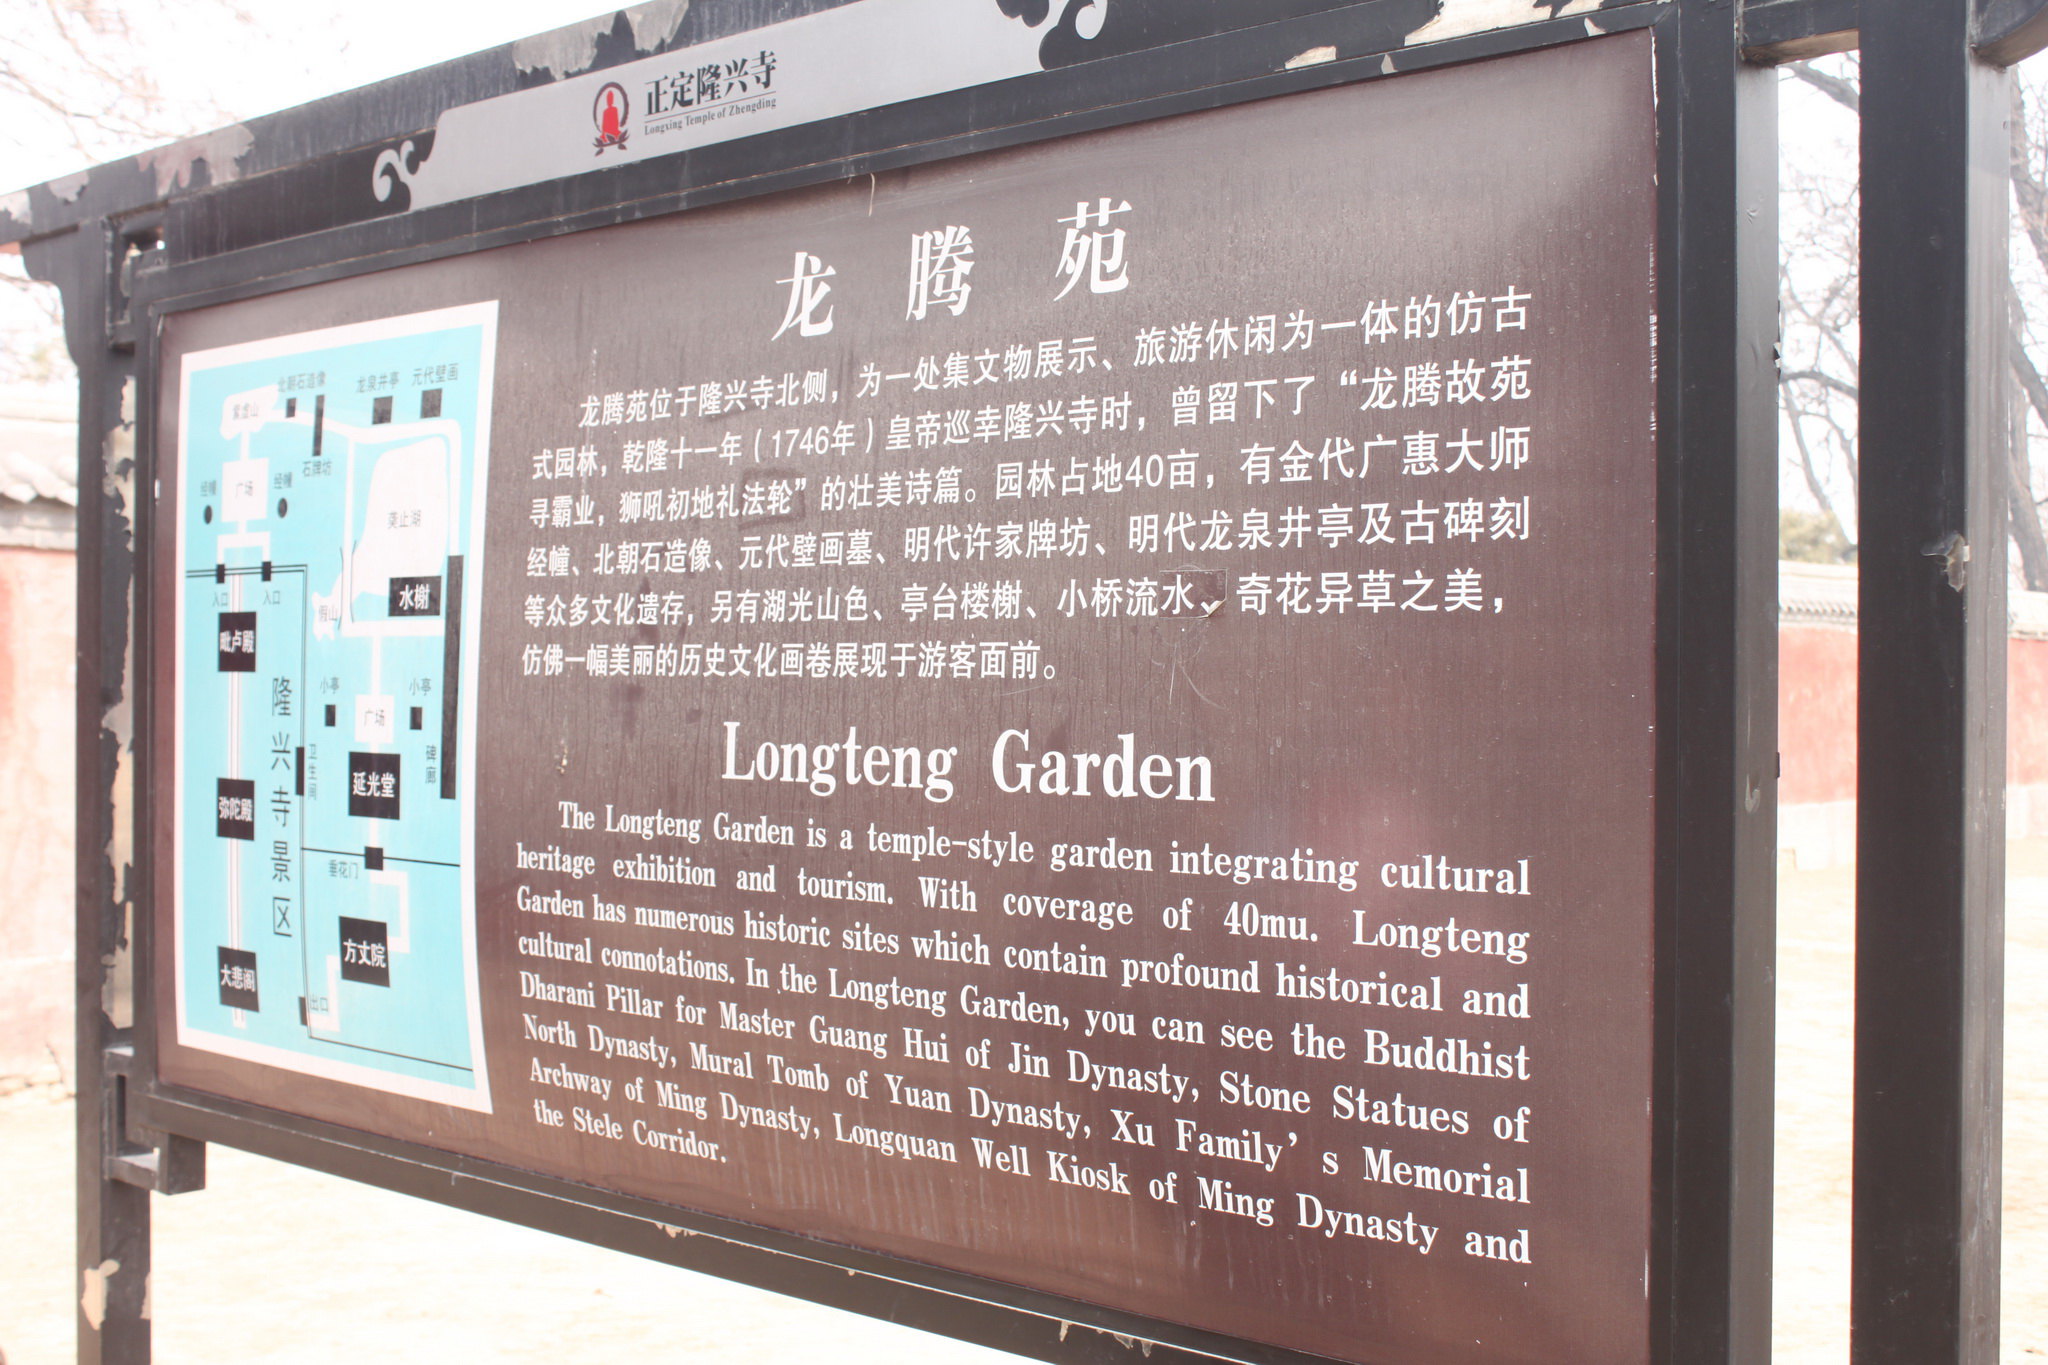 龙腾苑是隆兴寺的后花园,收集展示了一些文物 隆兴寺